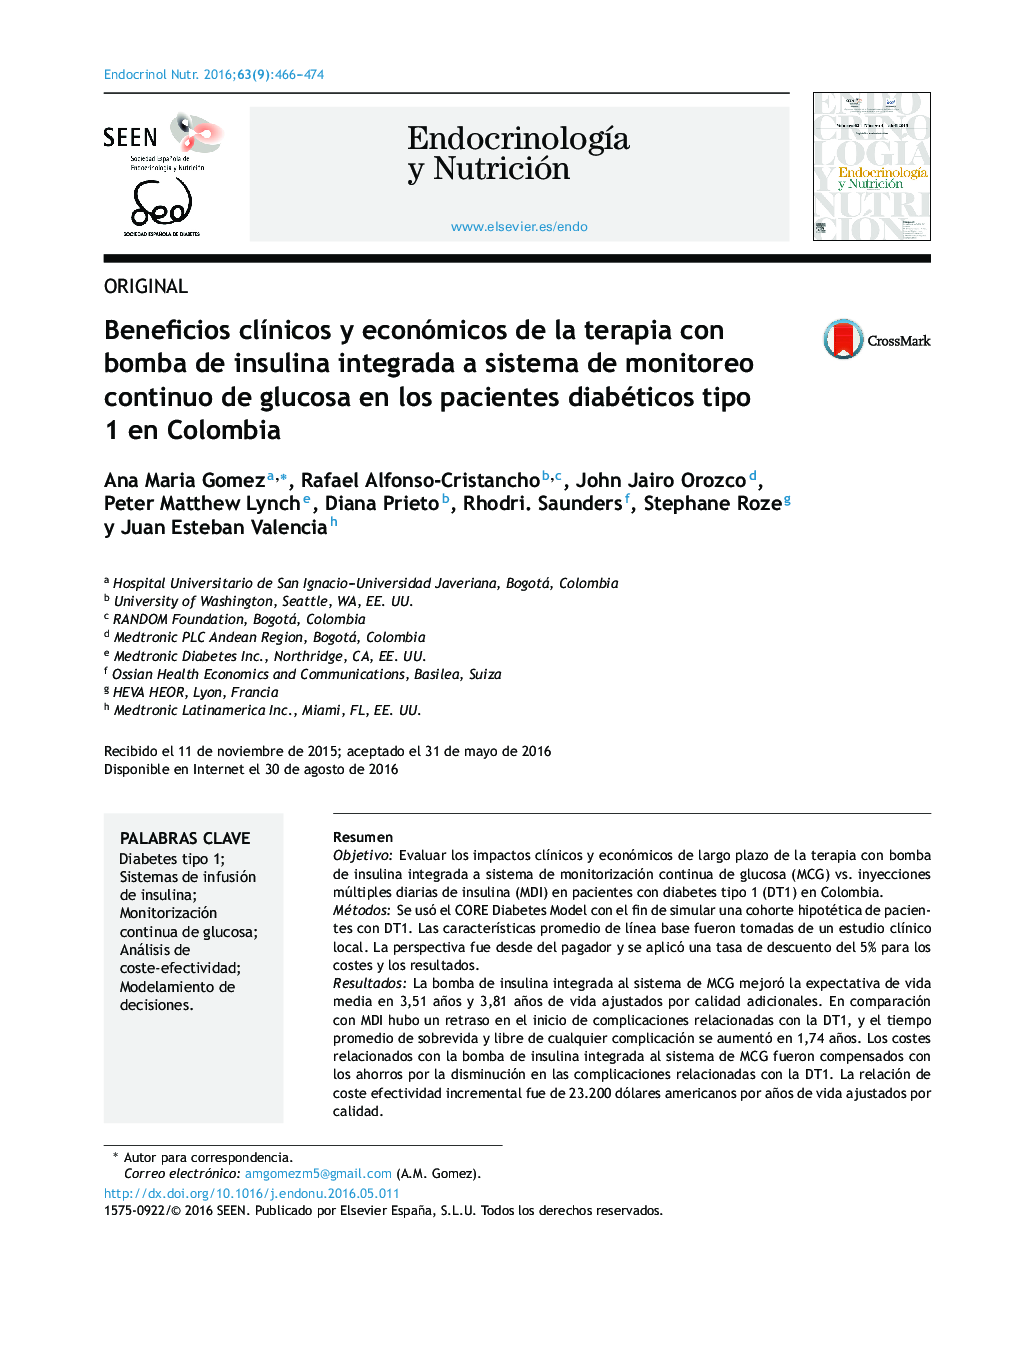 Beneficios clÃ­nicos y económicos de la terapia con bomba de insulina integrada a sistema de monitoreo continuo de glucosa en los pacientes diabéticos tipo 1 en Colombia